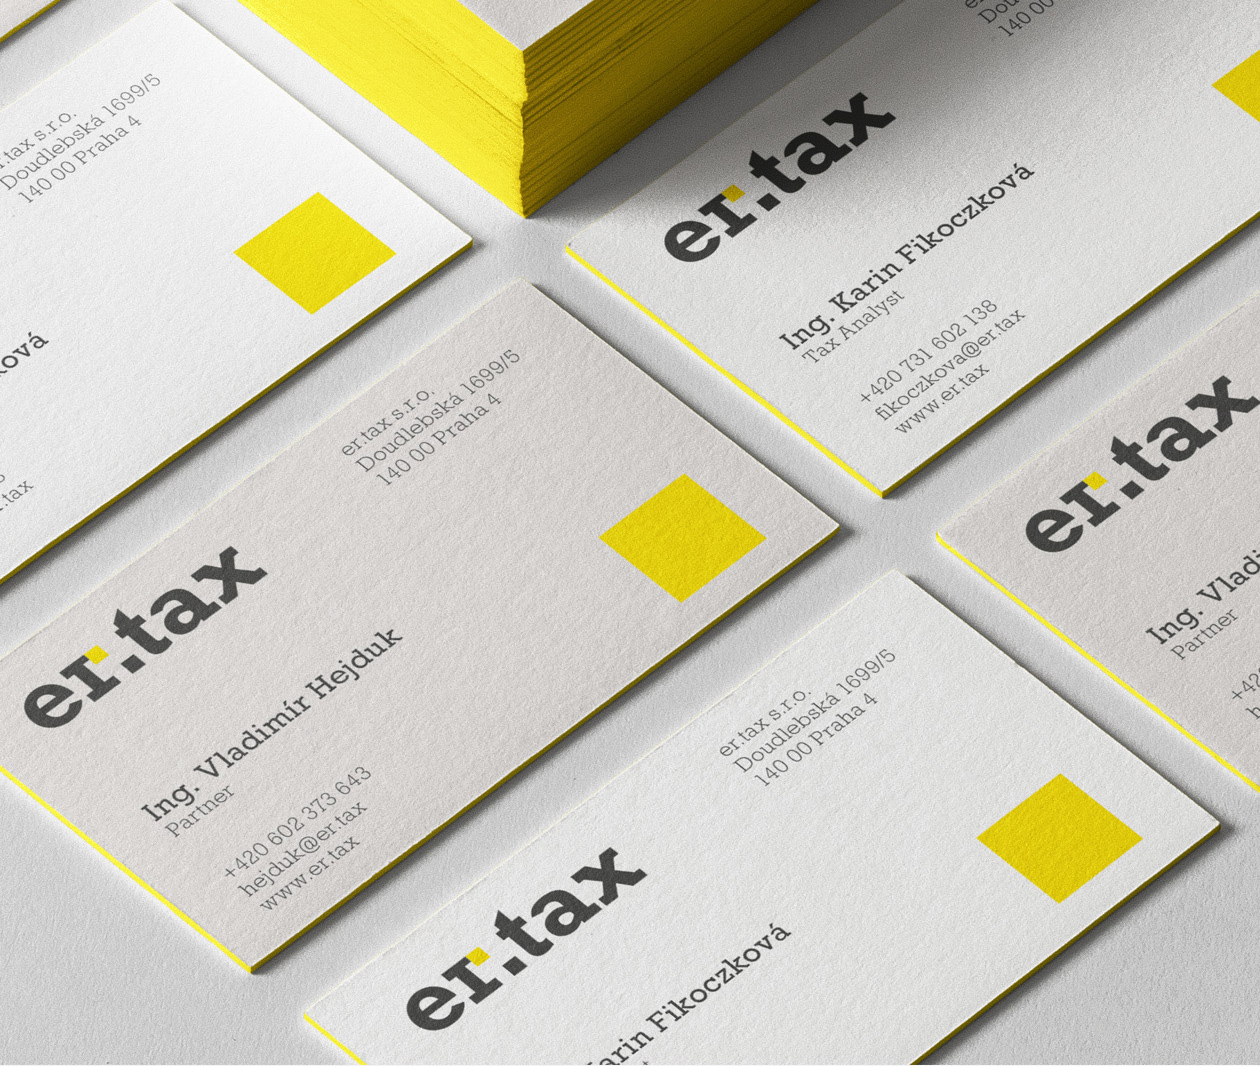 er-tax logo branding